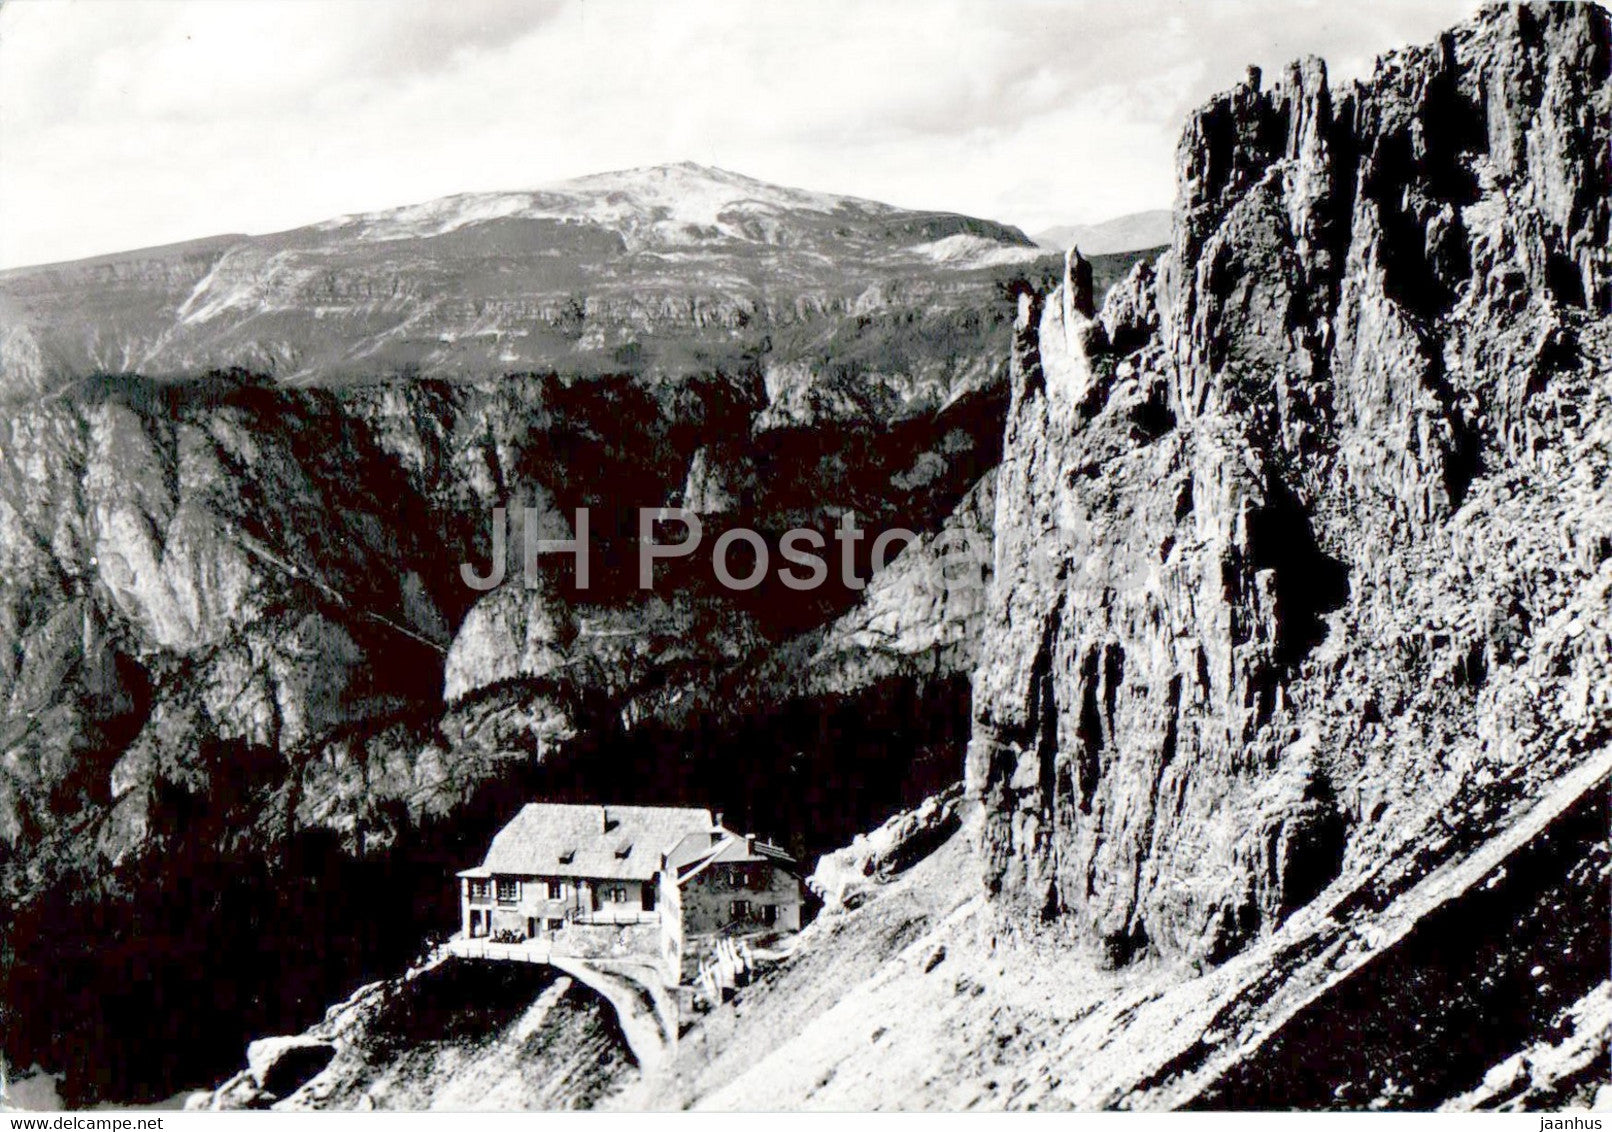 Rifugio Aleardo Fronza alle Coronelle verso Sciliar - Club Alpino Italiano - 1963 - Italy - used - JH Postcards